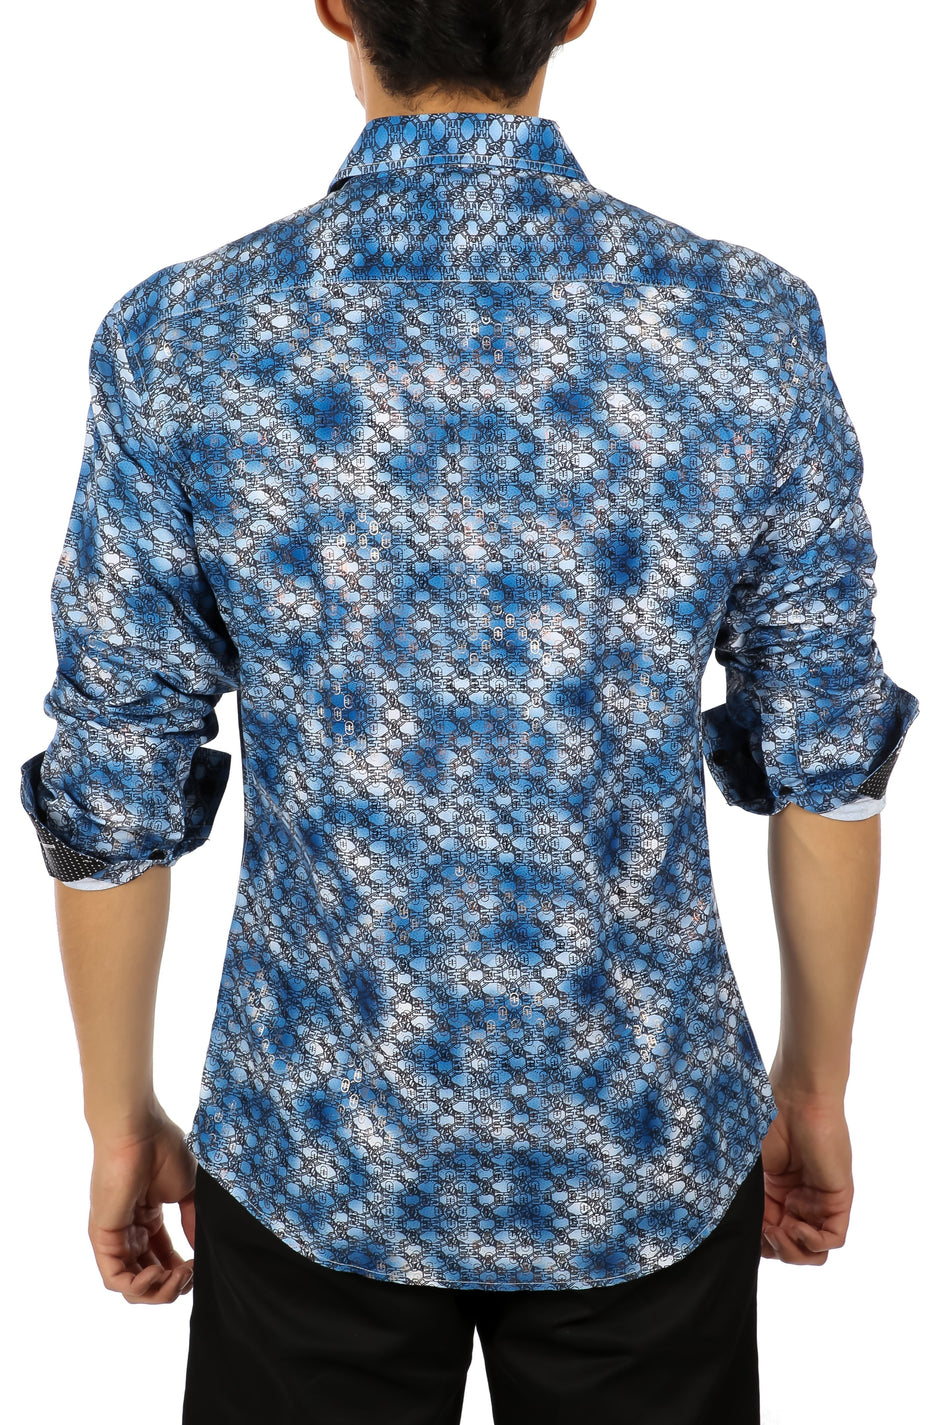 Men's Blue Chainlink Button Up Long Sleeve Dress Shirt